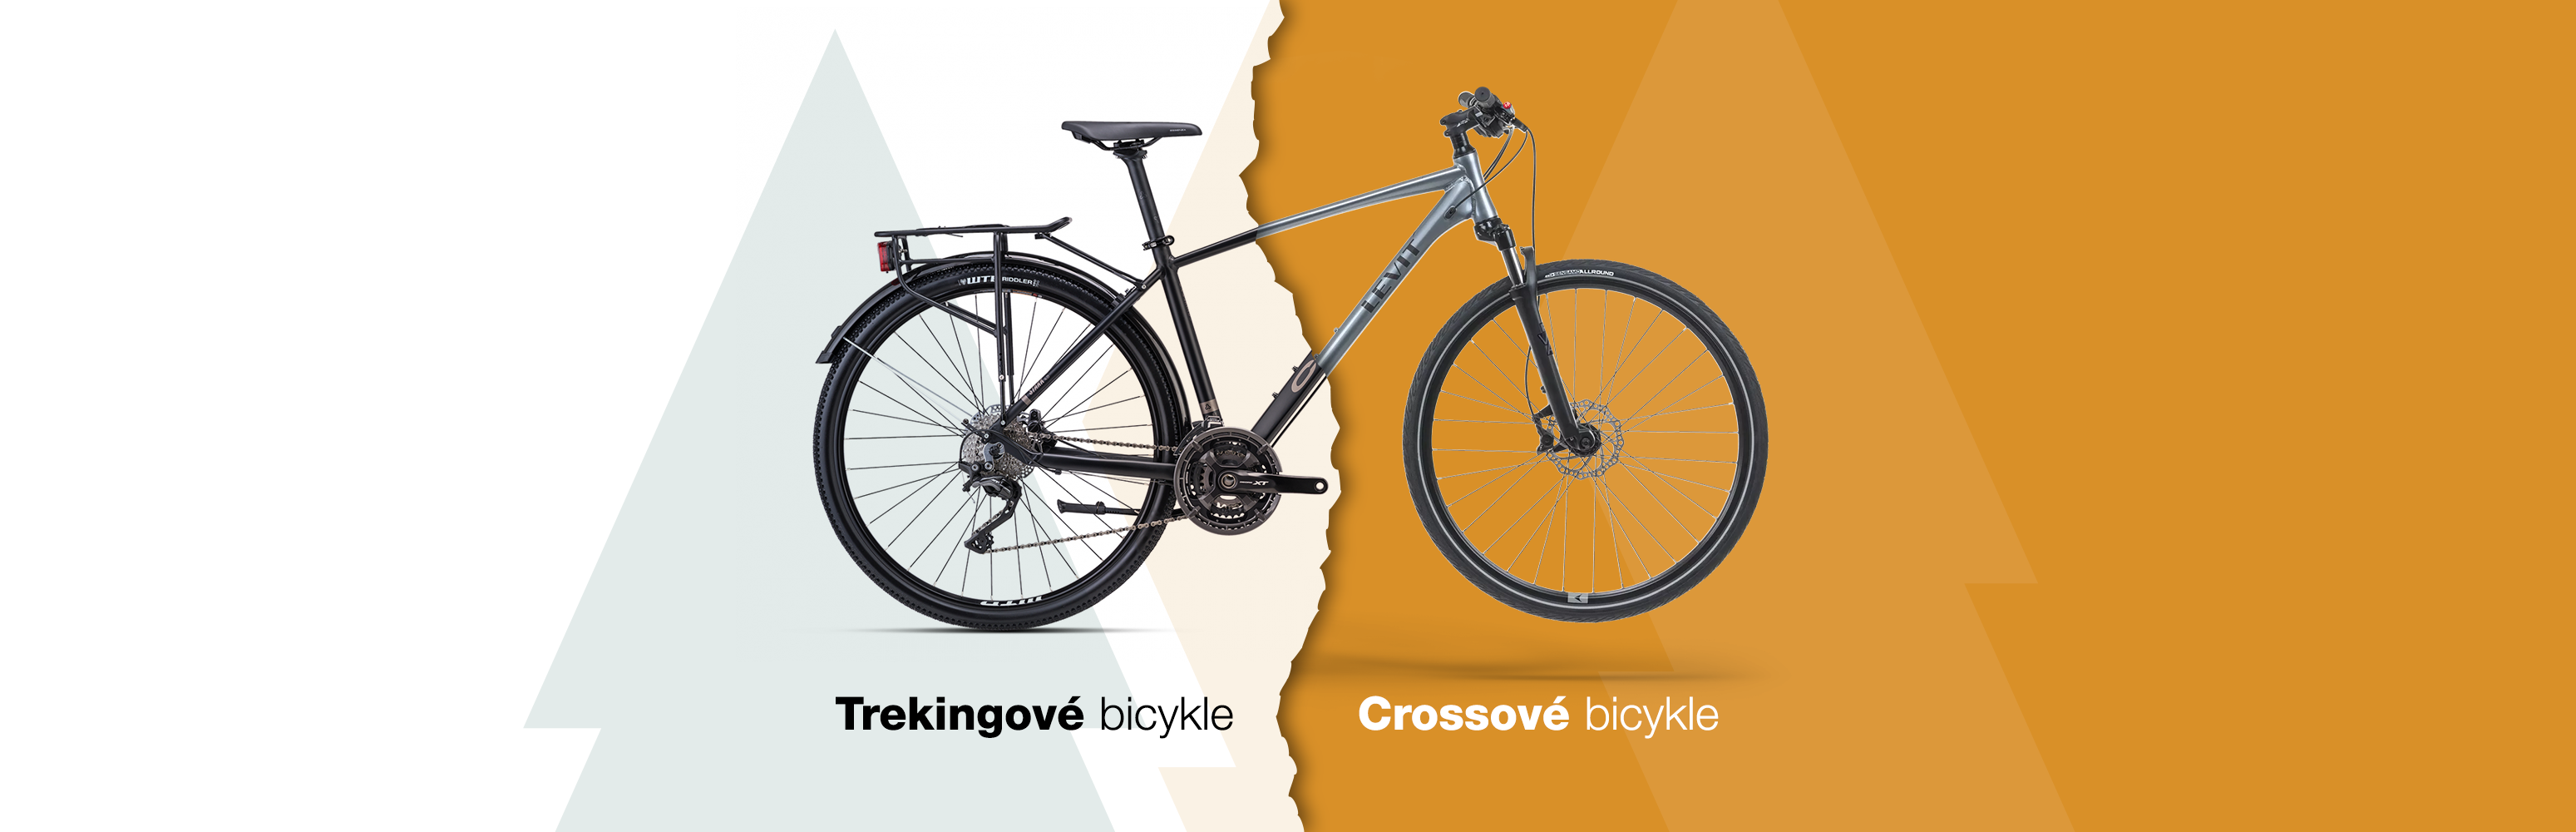 Aký je rozdiel medzi trekingovým a crossovým (krosovým) bicyklom?